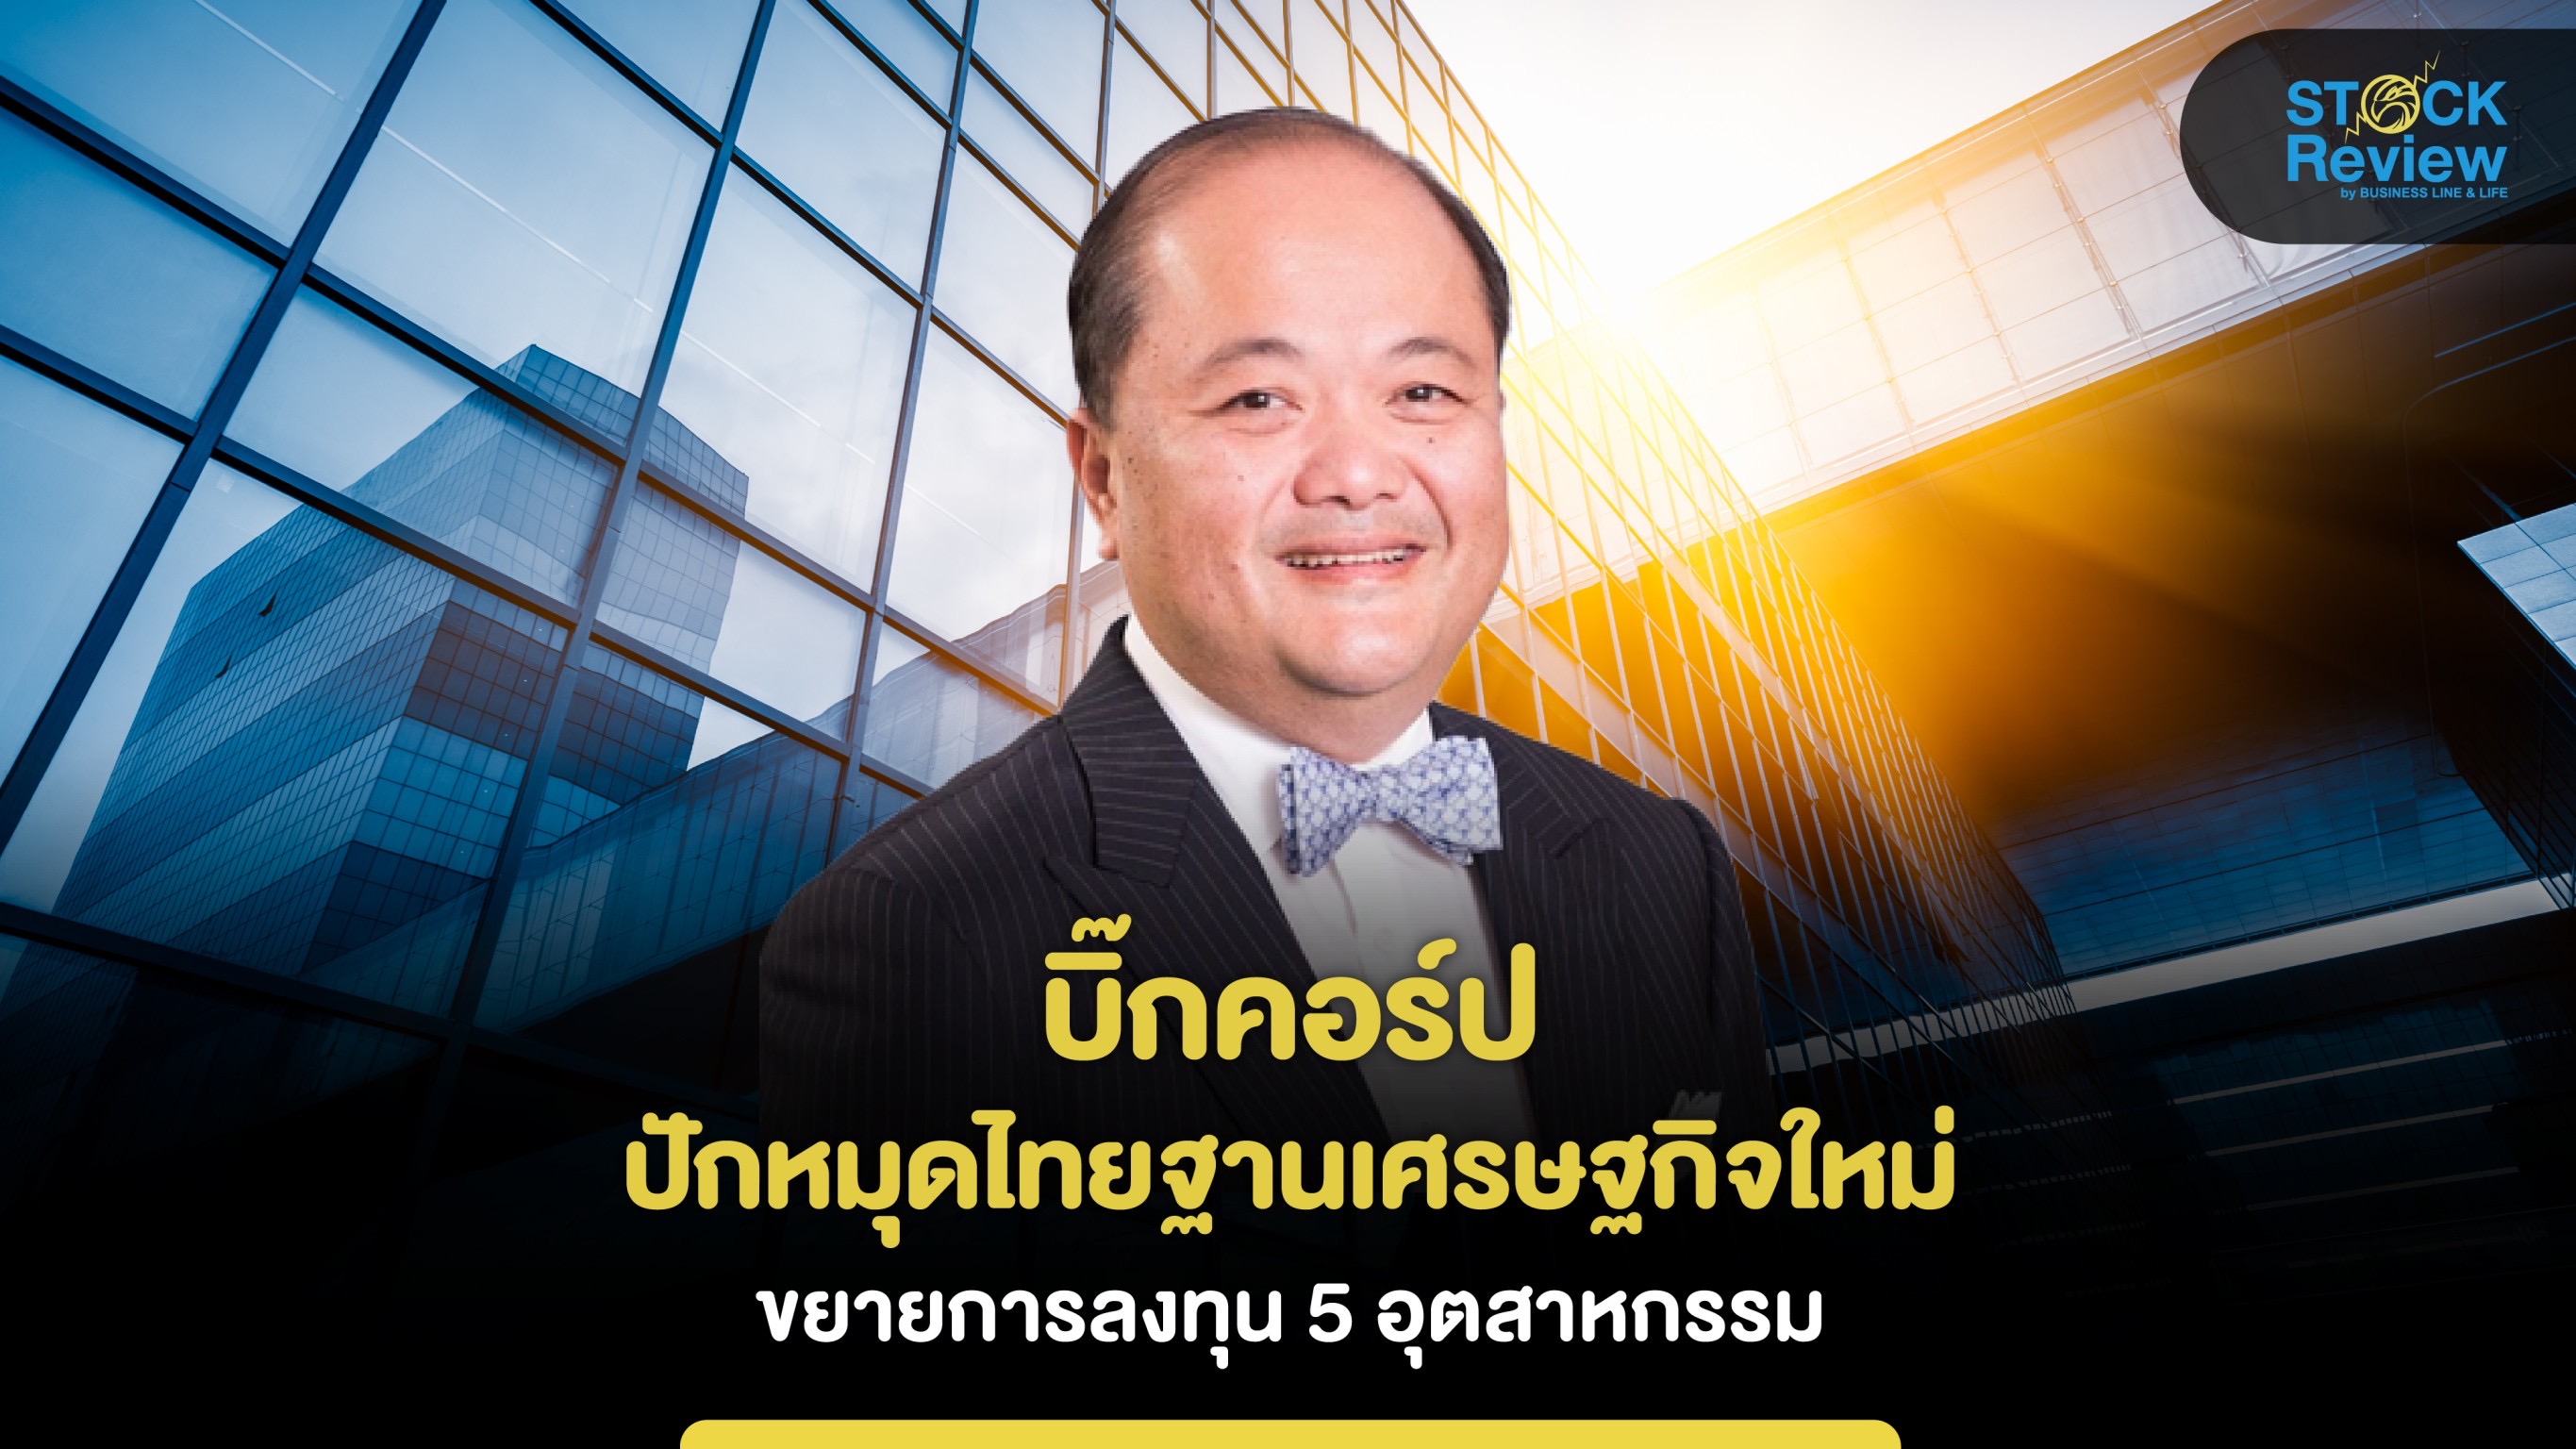 บิ๊กคอร์ปปักหมุดไทยฐานเศรษฐกิจใหม่ ขยายลงทุน 5 กลุ่มอุตสาหกรรม